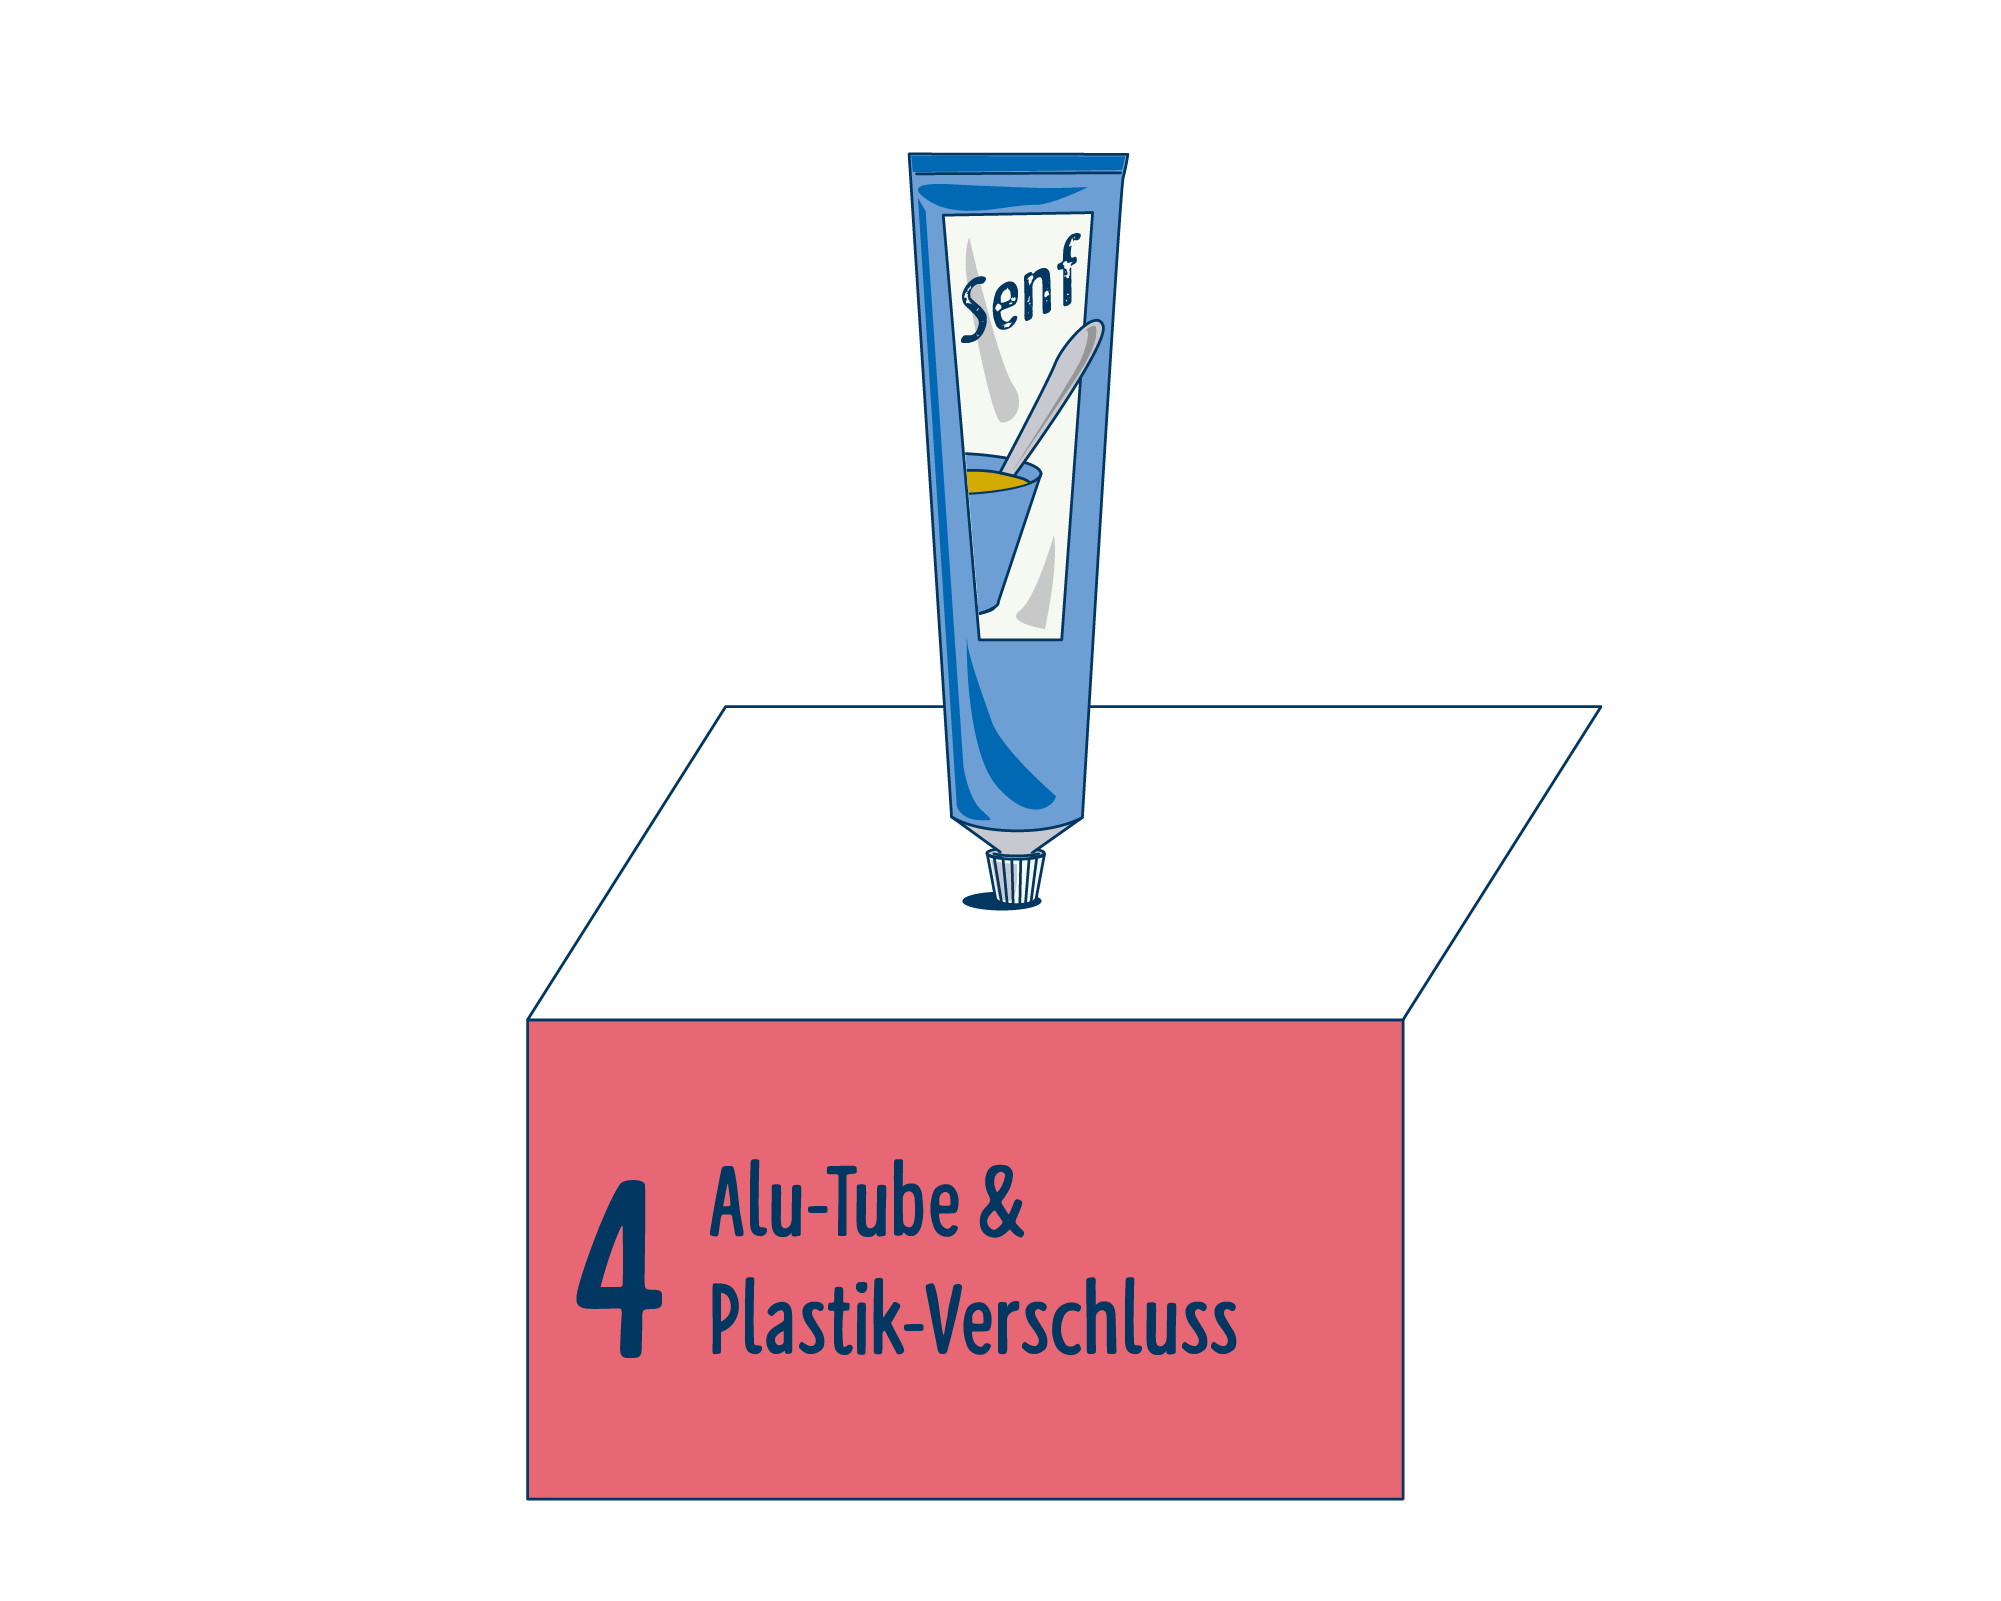 Bild Produktverpackung von Senf & Saucen eingeordnet auf Platz 4, bestehend aus Alu-Tube & Plastik-Verschluss.